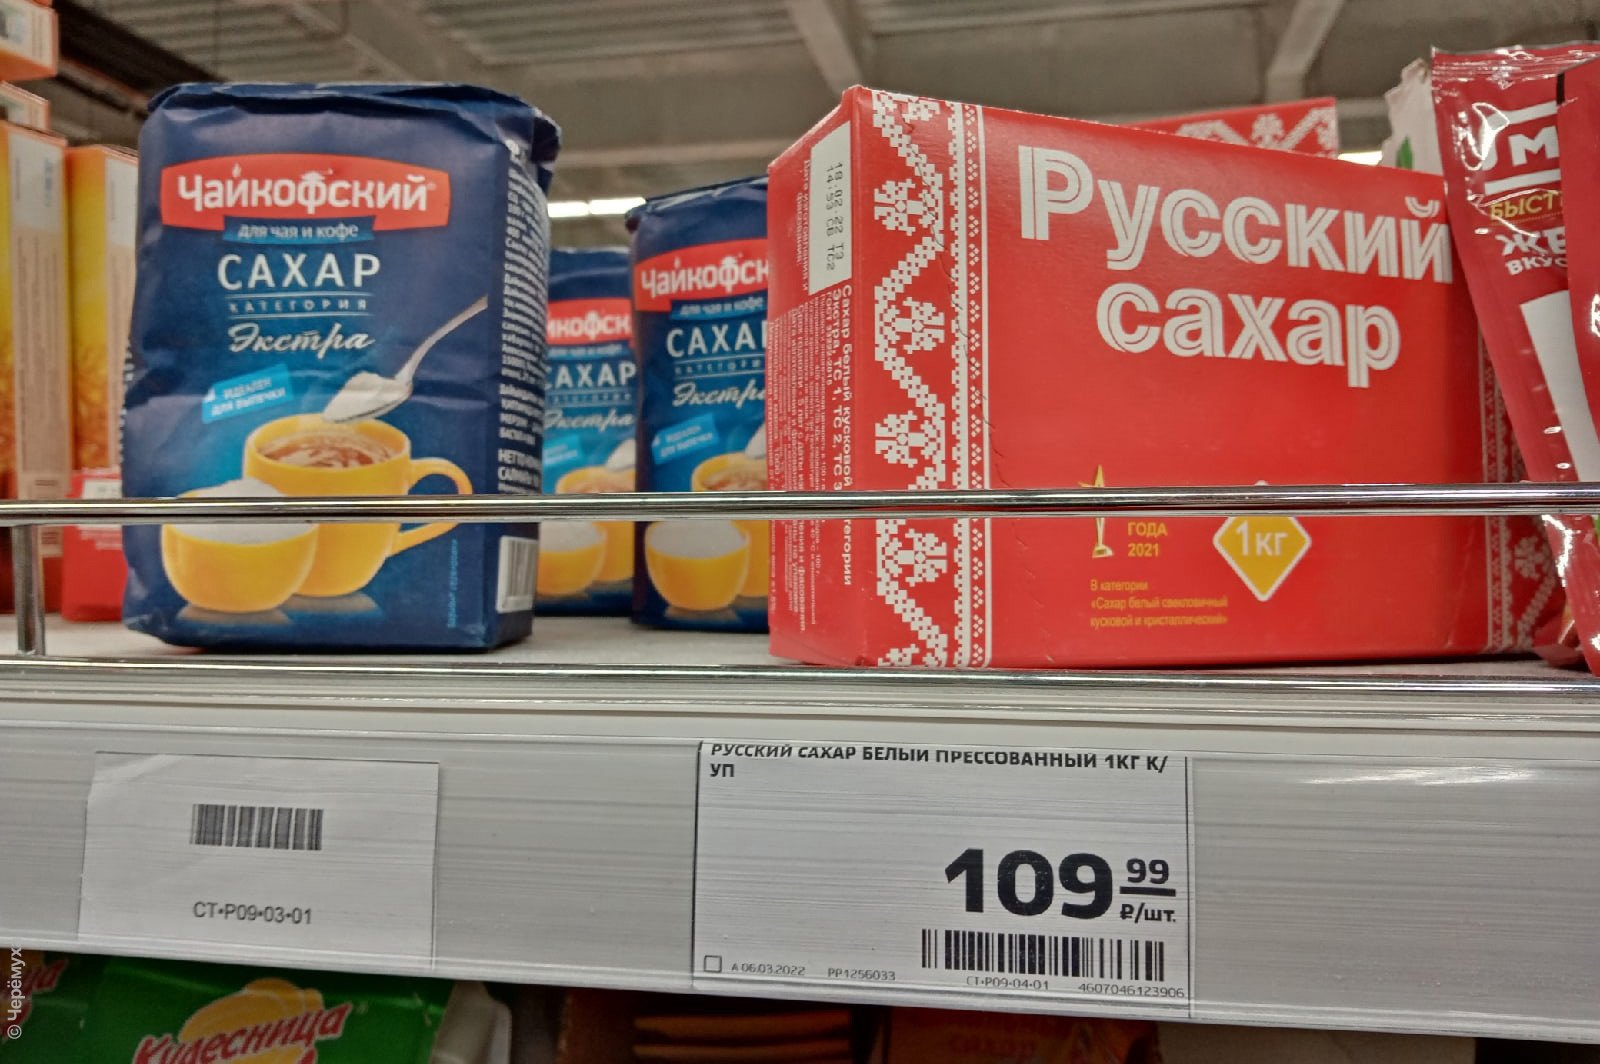 Сахар пятерочка цена 1 кг сегодня. Сахар в магазине. Сахарный песок в магазине. Сахар магнит. Сахар в супермаркете.